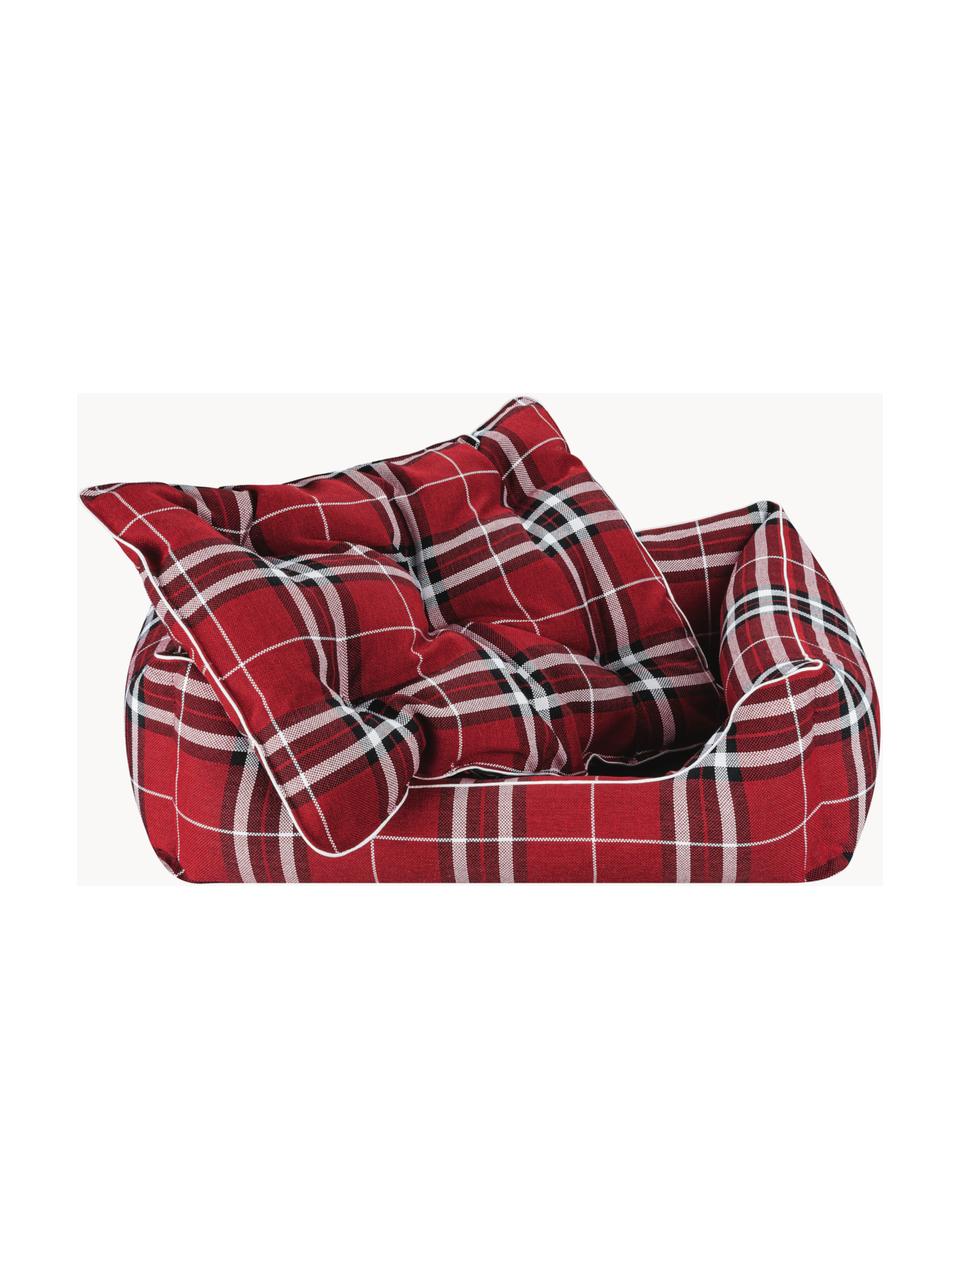 Pelíšek pro psa Highlands, různé velikosti, Červená, černá, bílá, Š 70 cm, H 50 cm